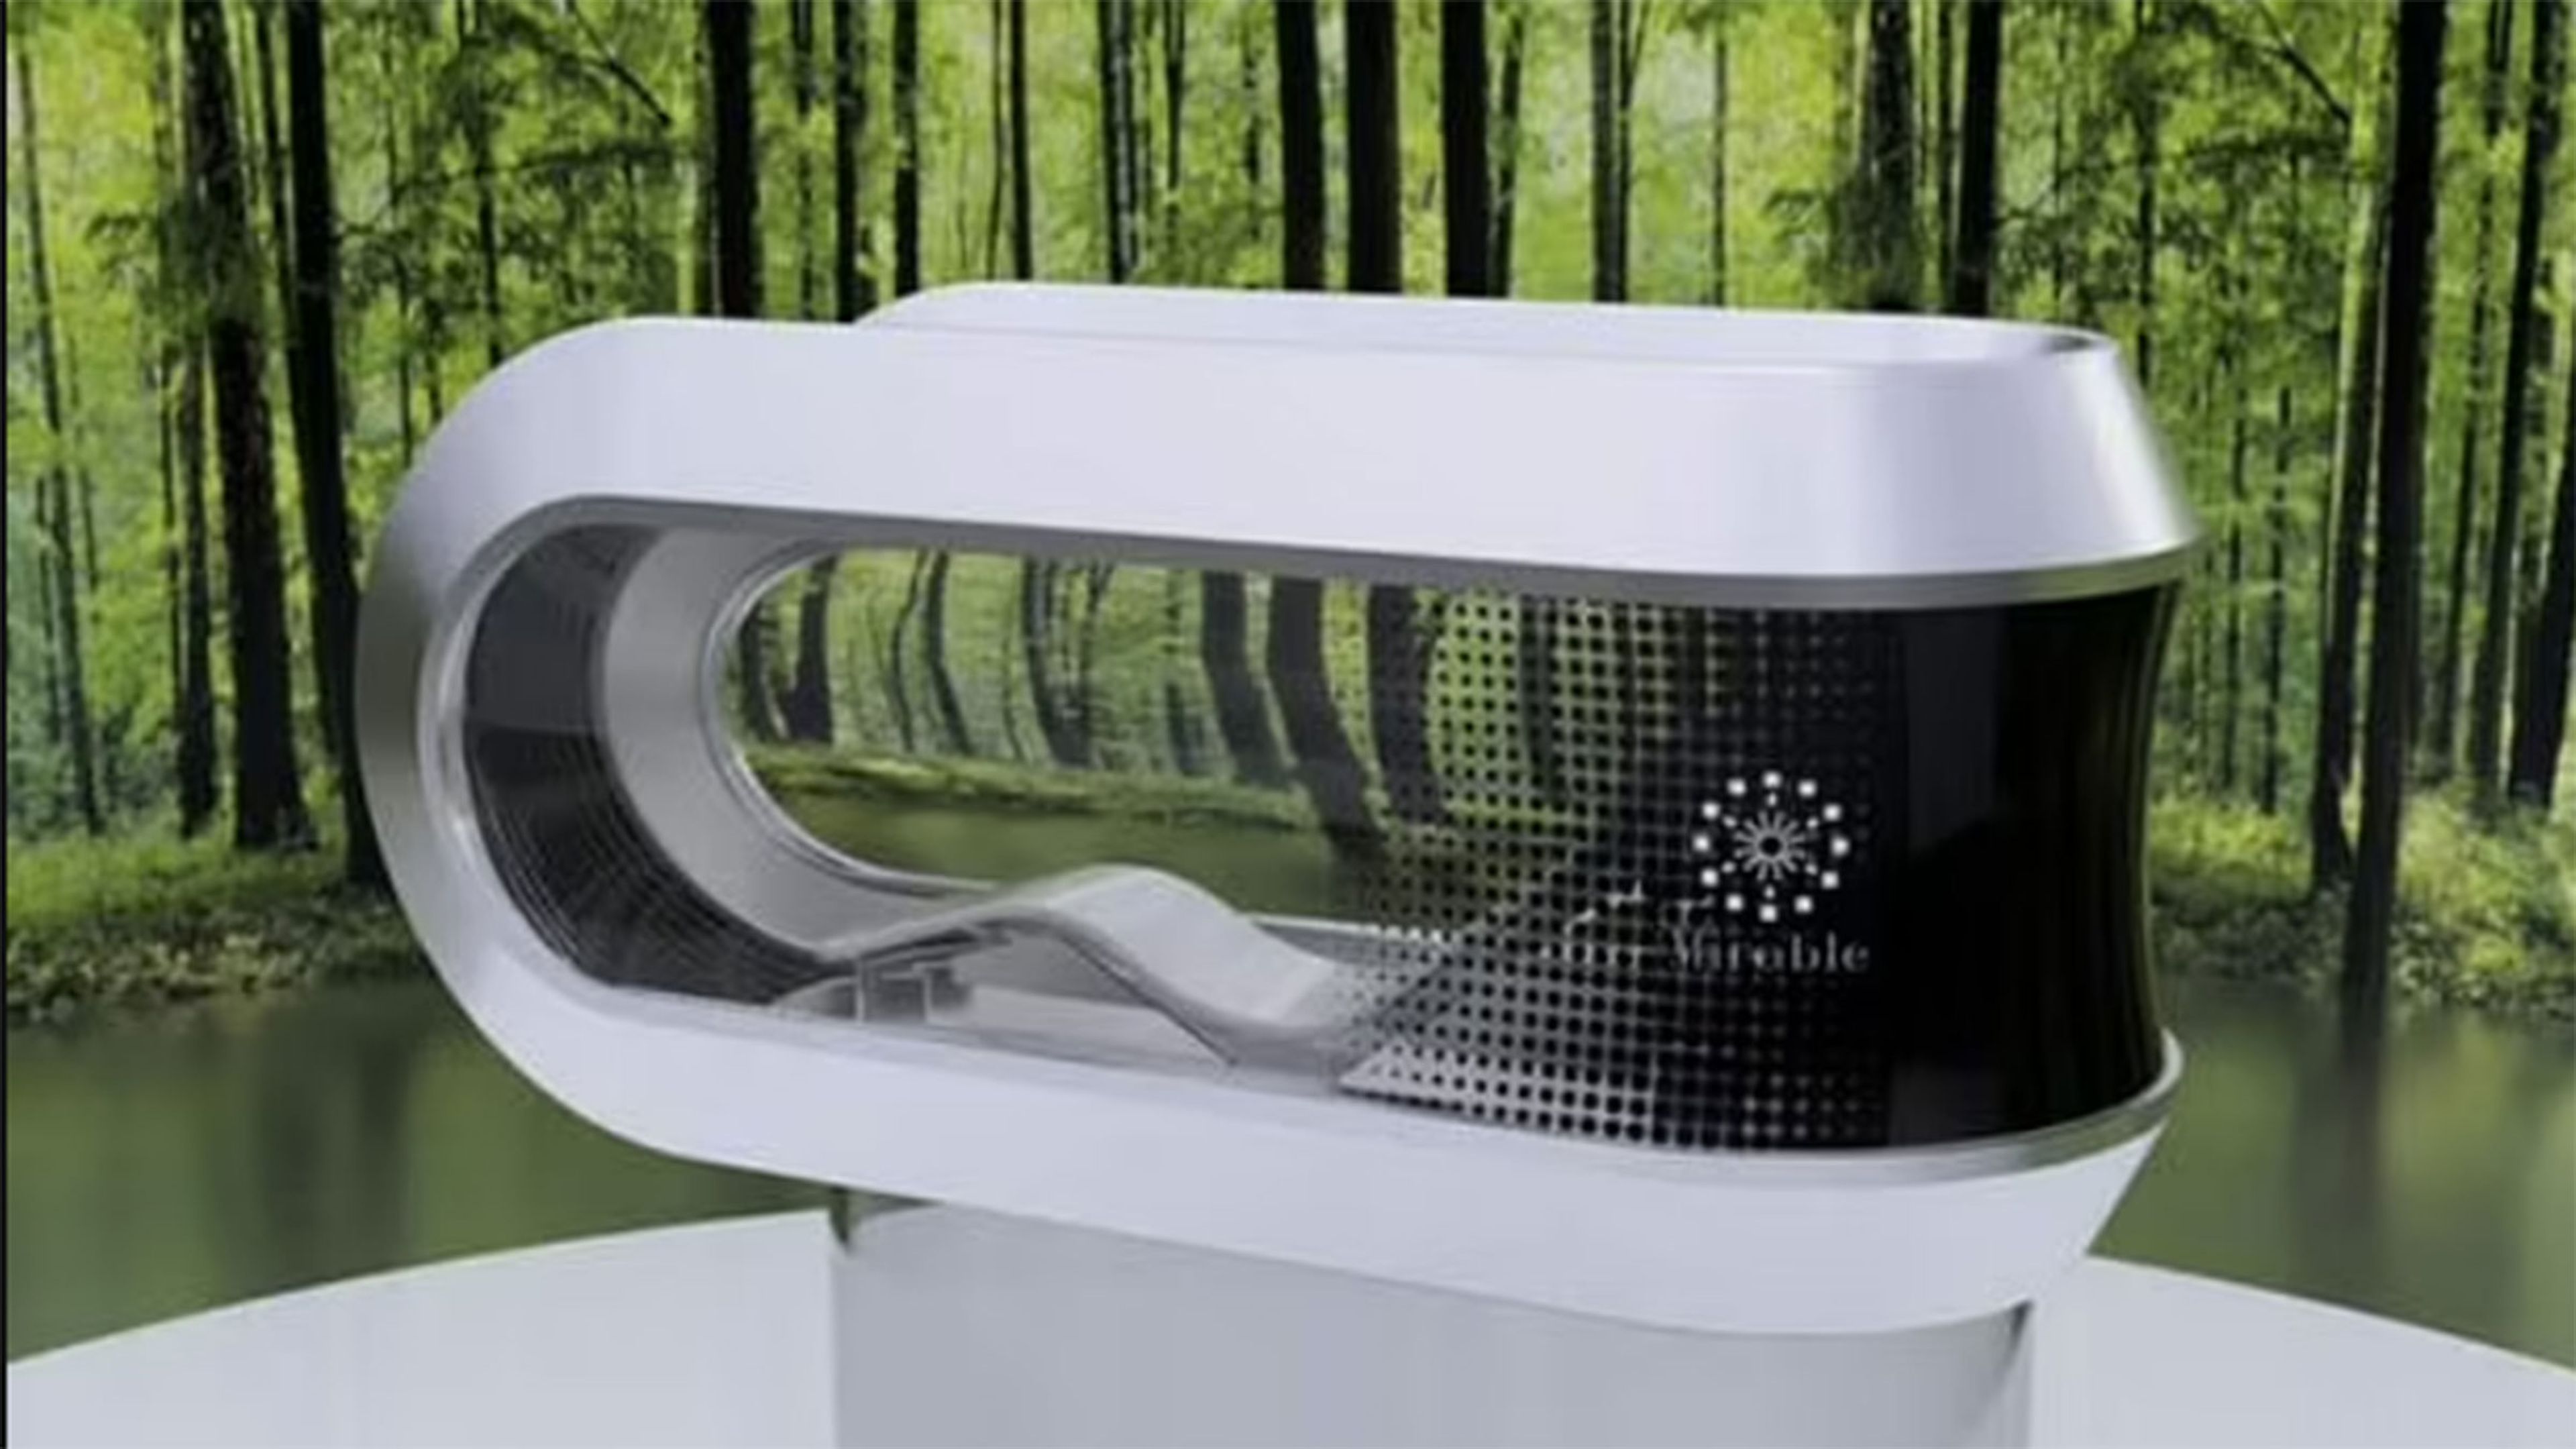 Científicos crean “una lavadora para humanos” que usa inteligencia artificial